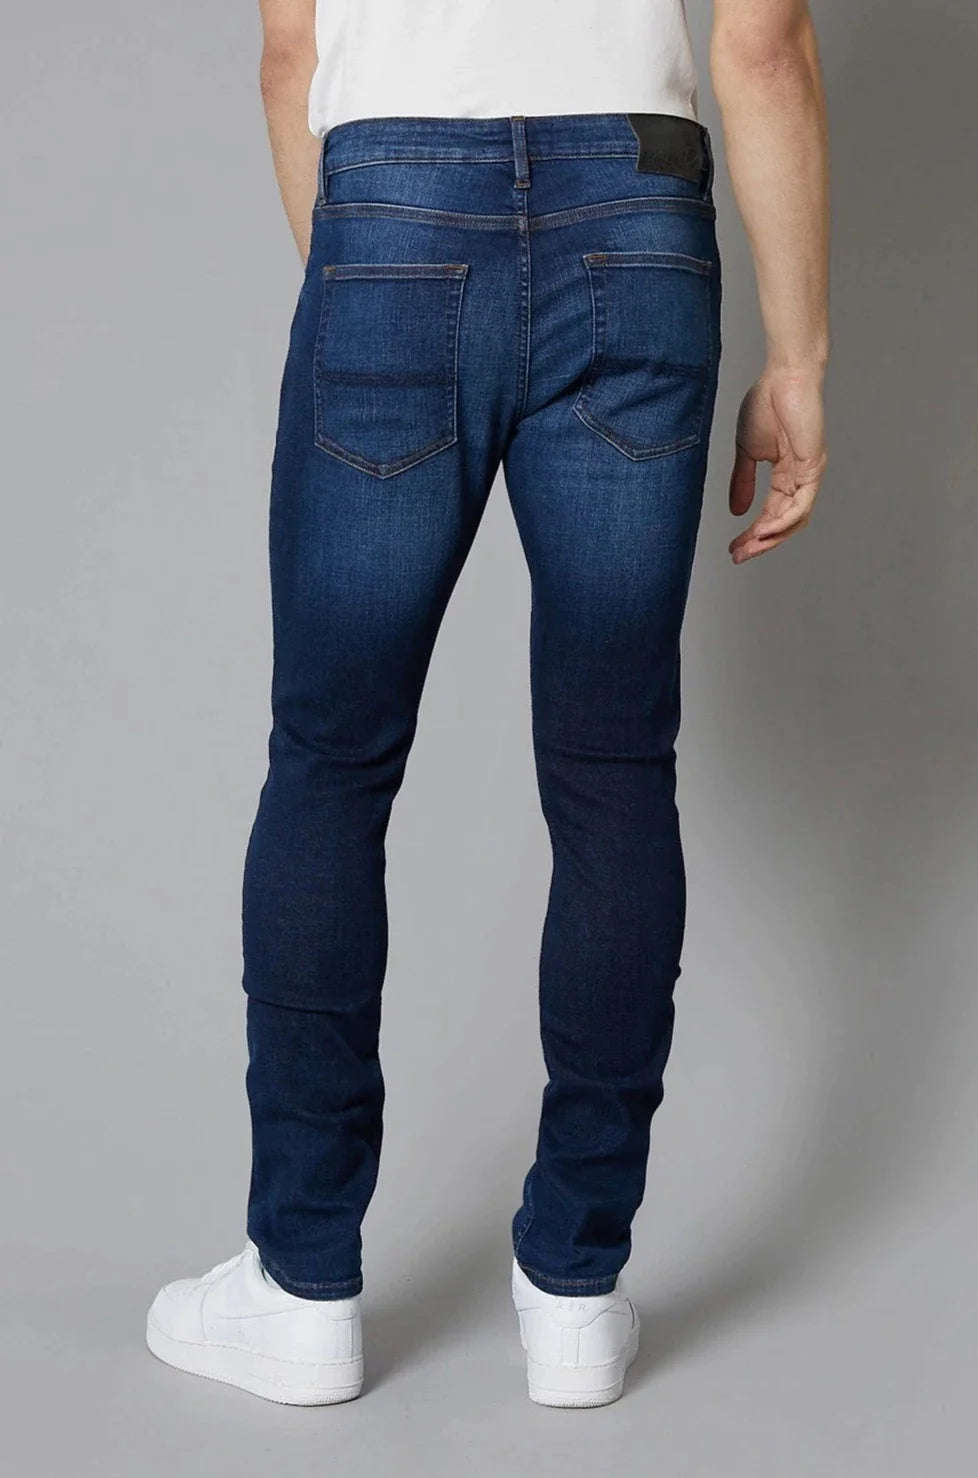 DML "Dakota" Slim Jeans in Dark Blue